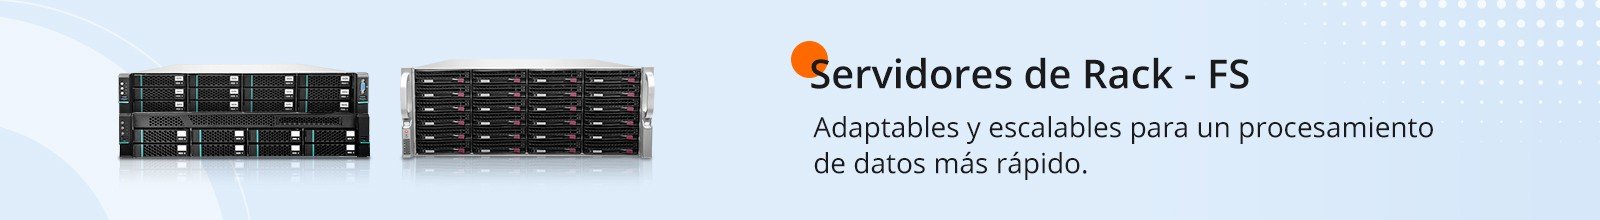 analisis-de-las-ventajas-y-desventajas-de-ubuntu-server-es-la-mejor-opcion-para-tu-servidor